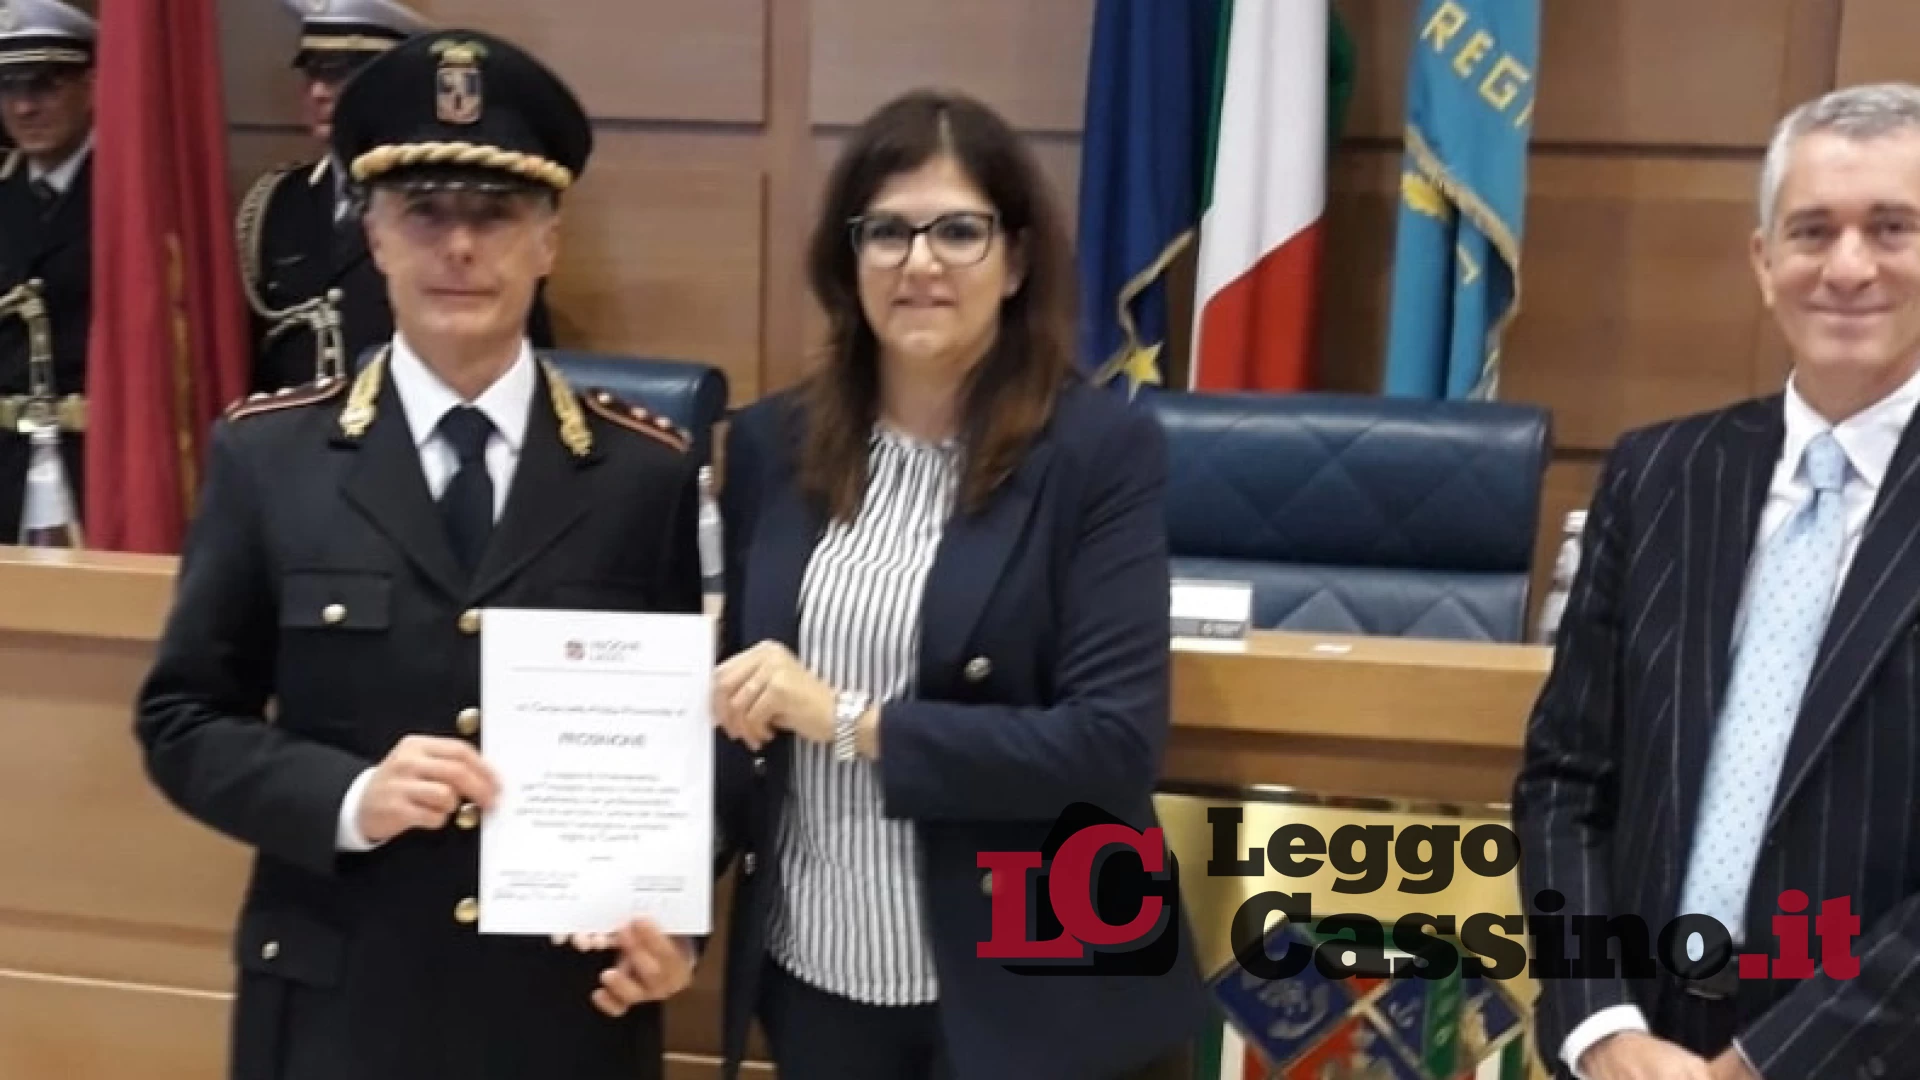 La Polizia Locale della Provincia di Frosinone premiata in Regione